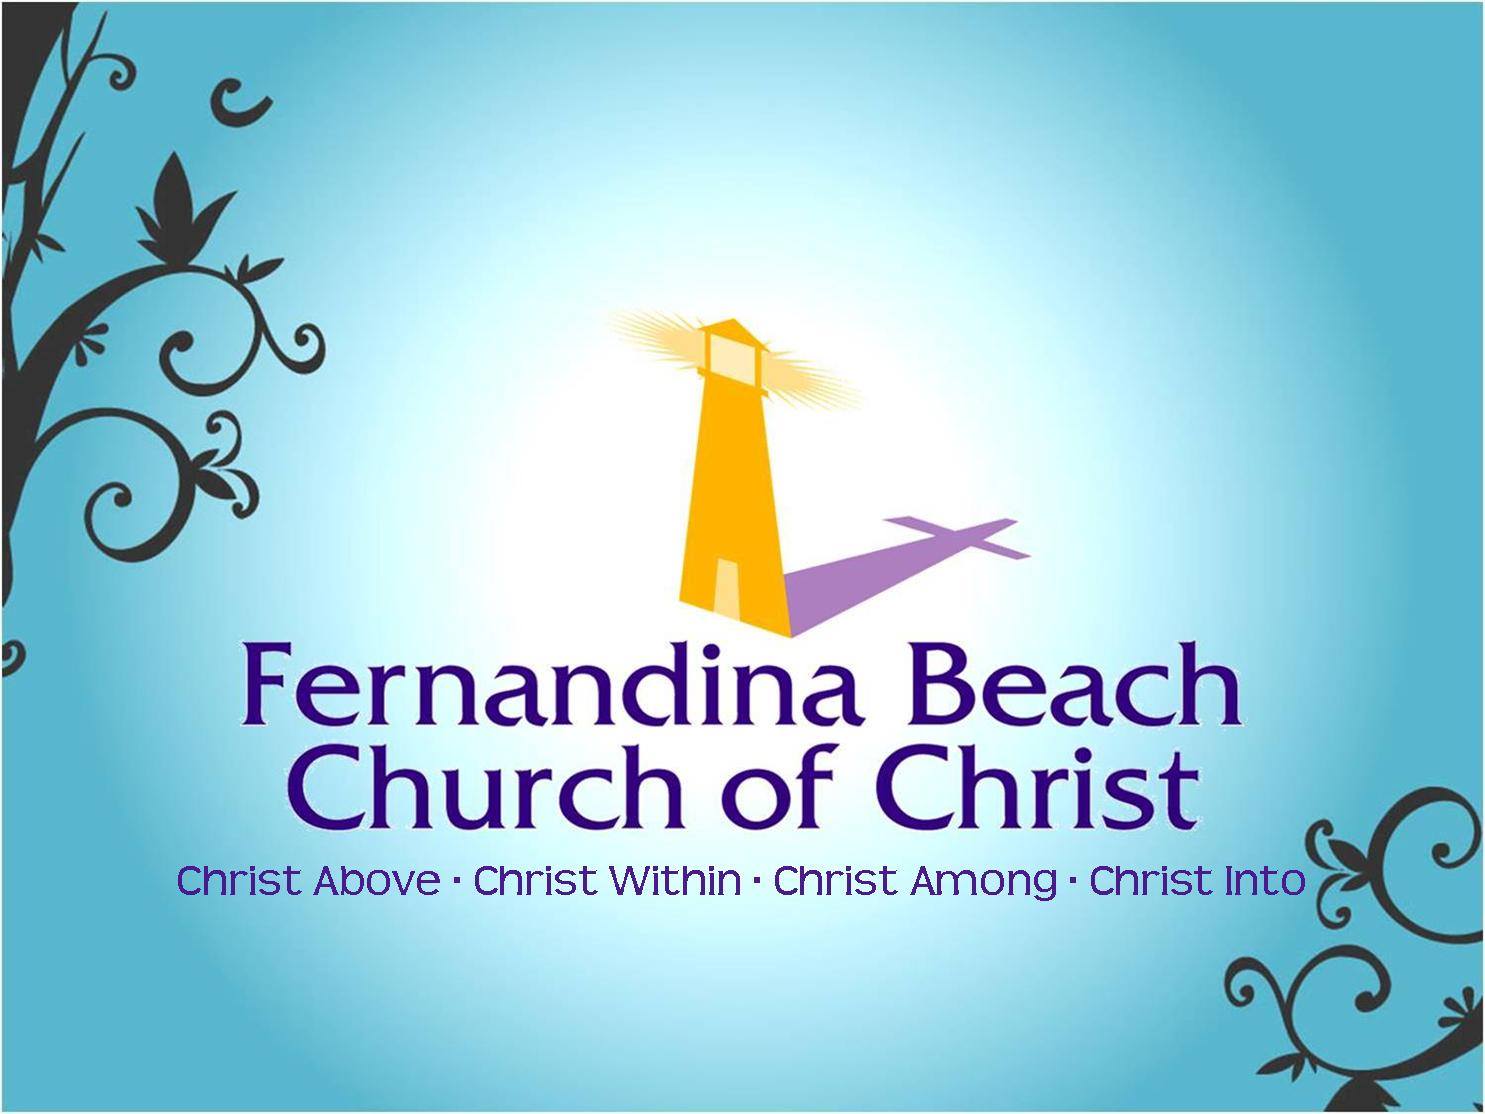 Fernandina Beach Church of Christ - Food Assistance